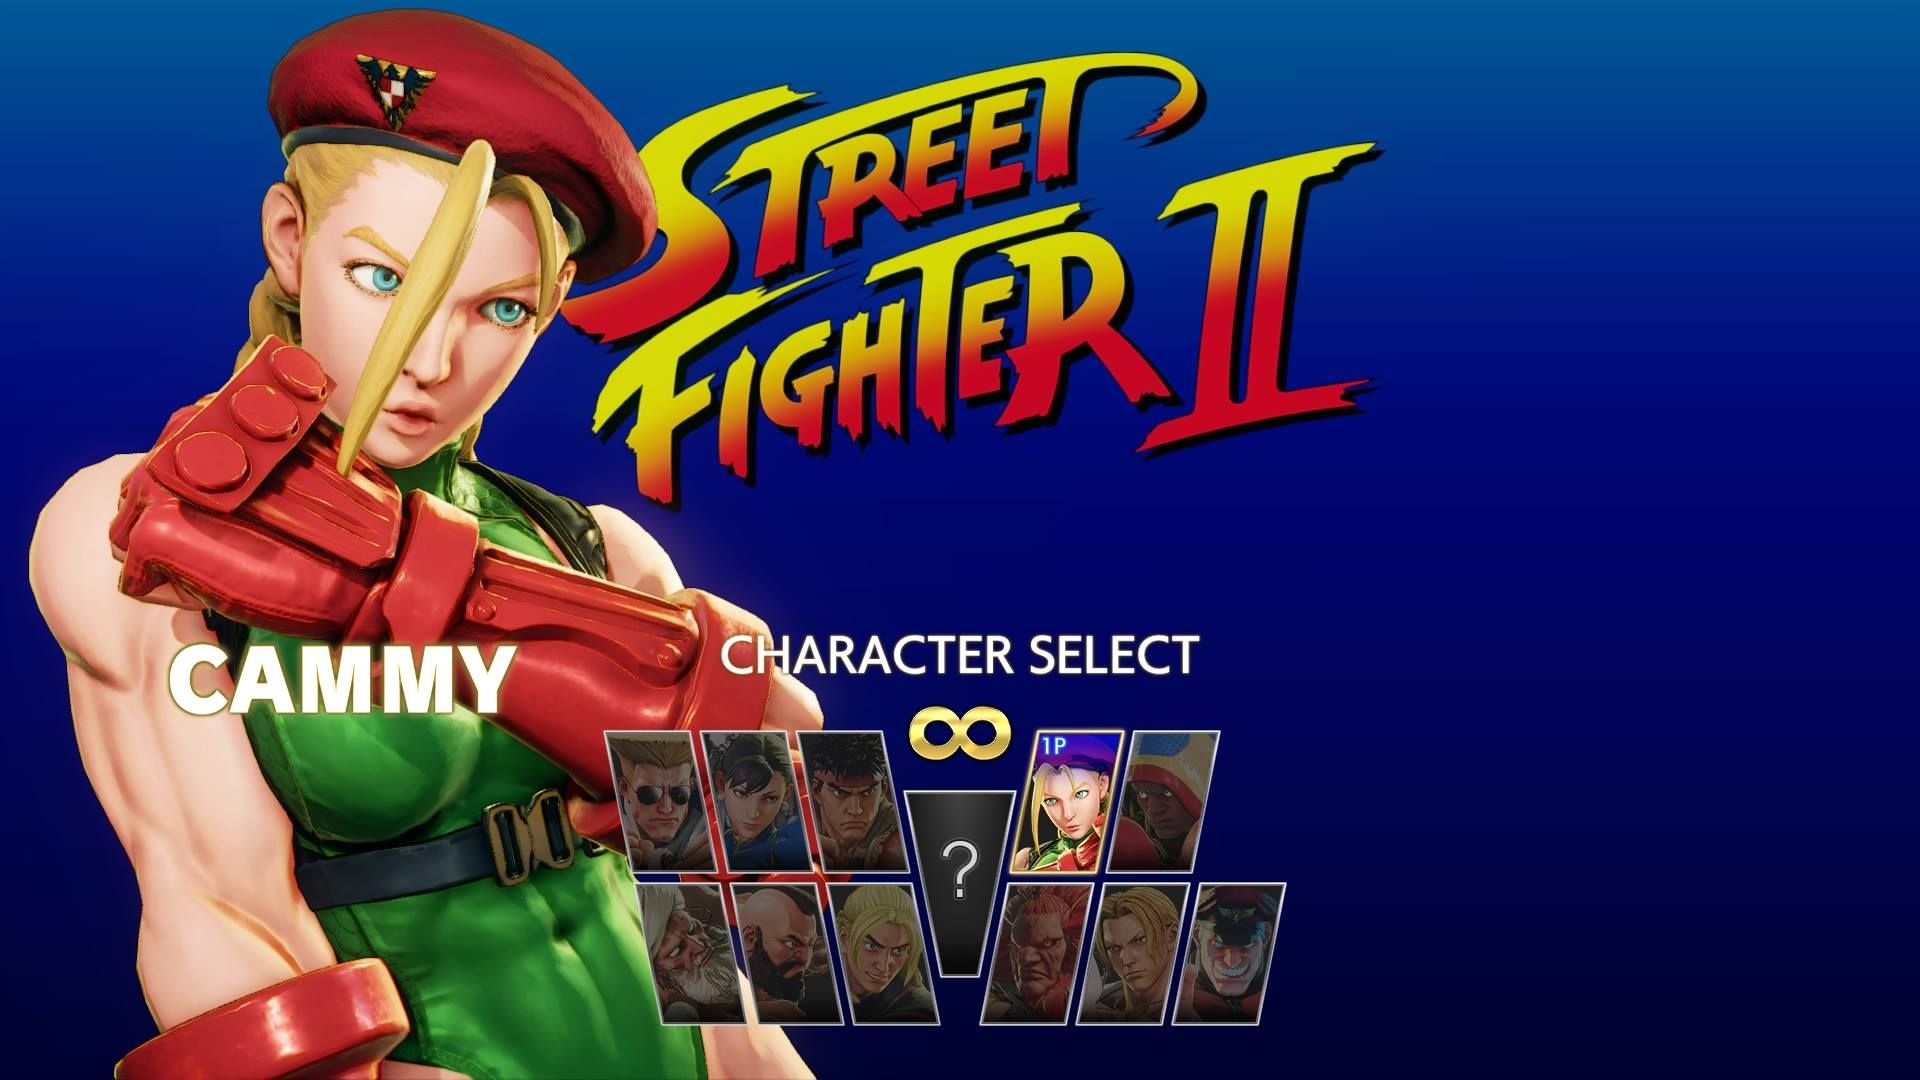  Street Fighter V - PlayStation 4 Standard Edition : CAPCOM:  Everything Else